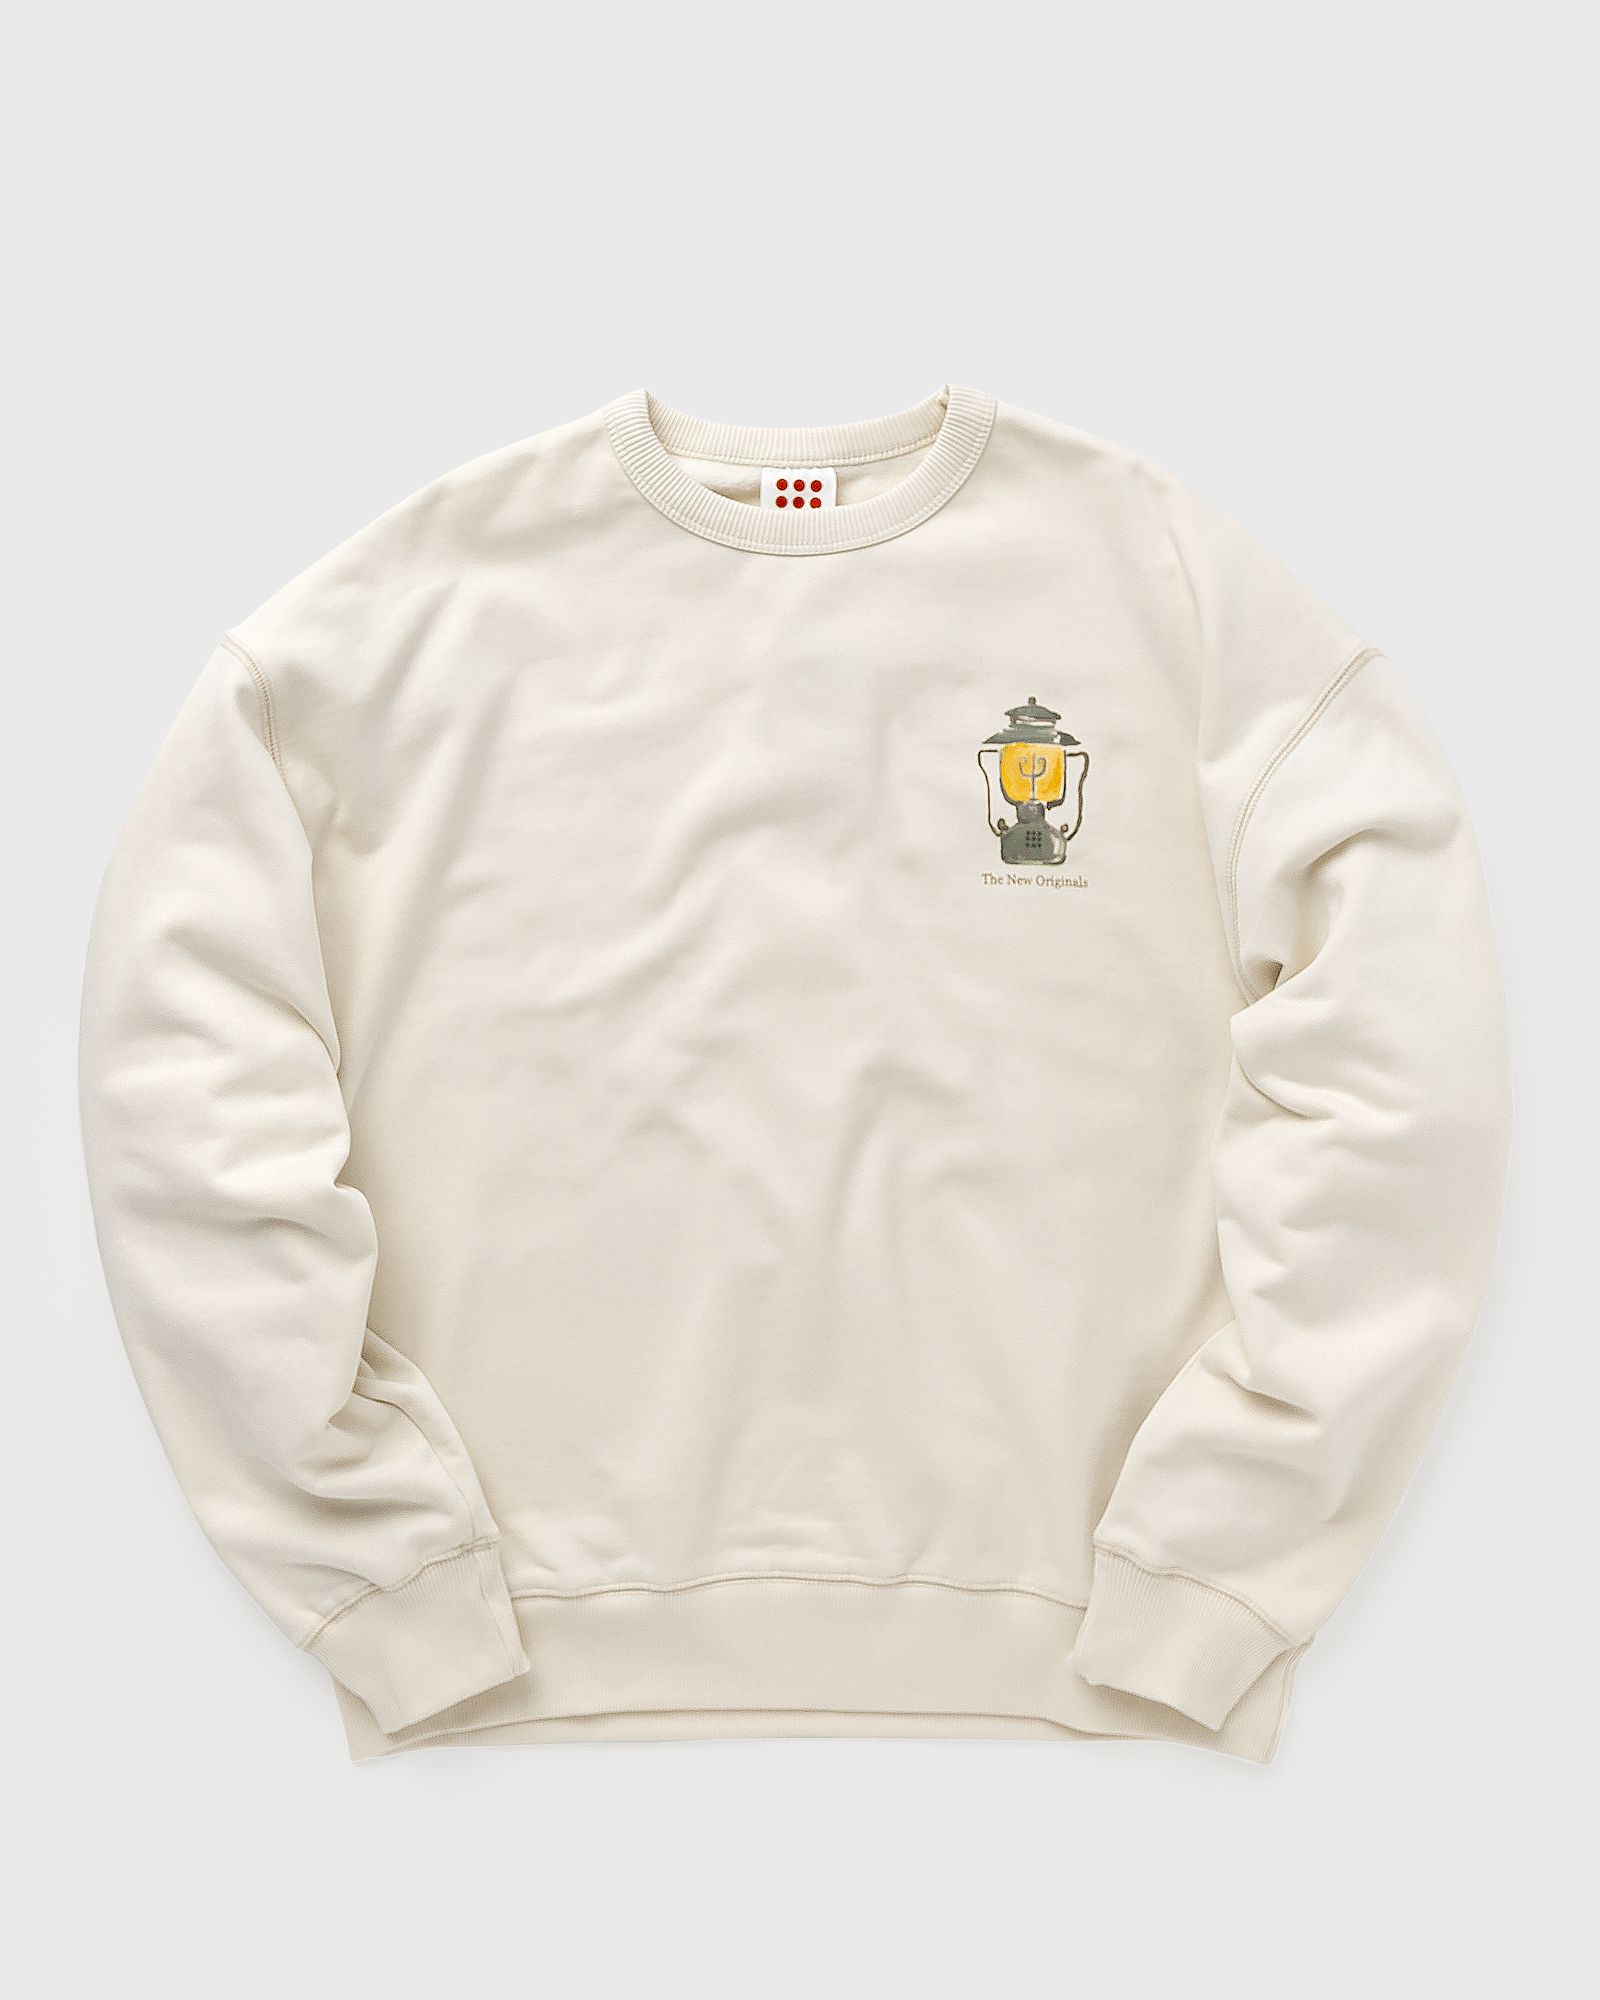 The New Originals - camping essentials crewneck men sweatshirts white in größe:xl